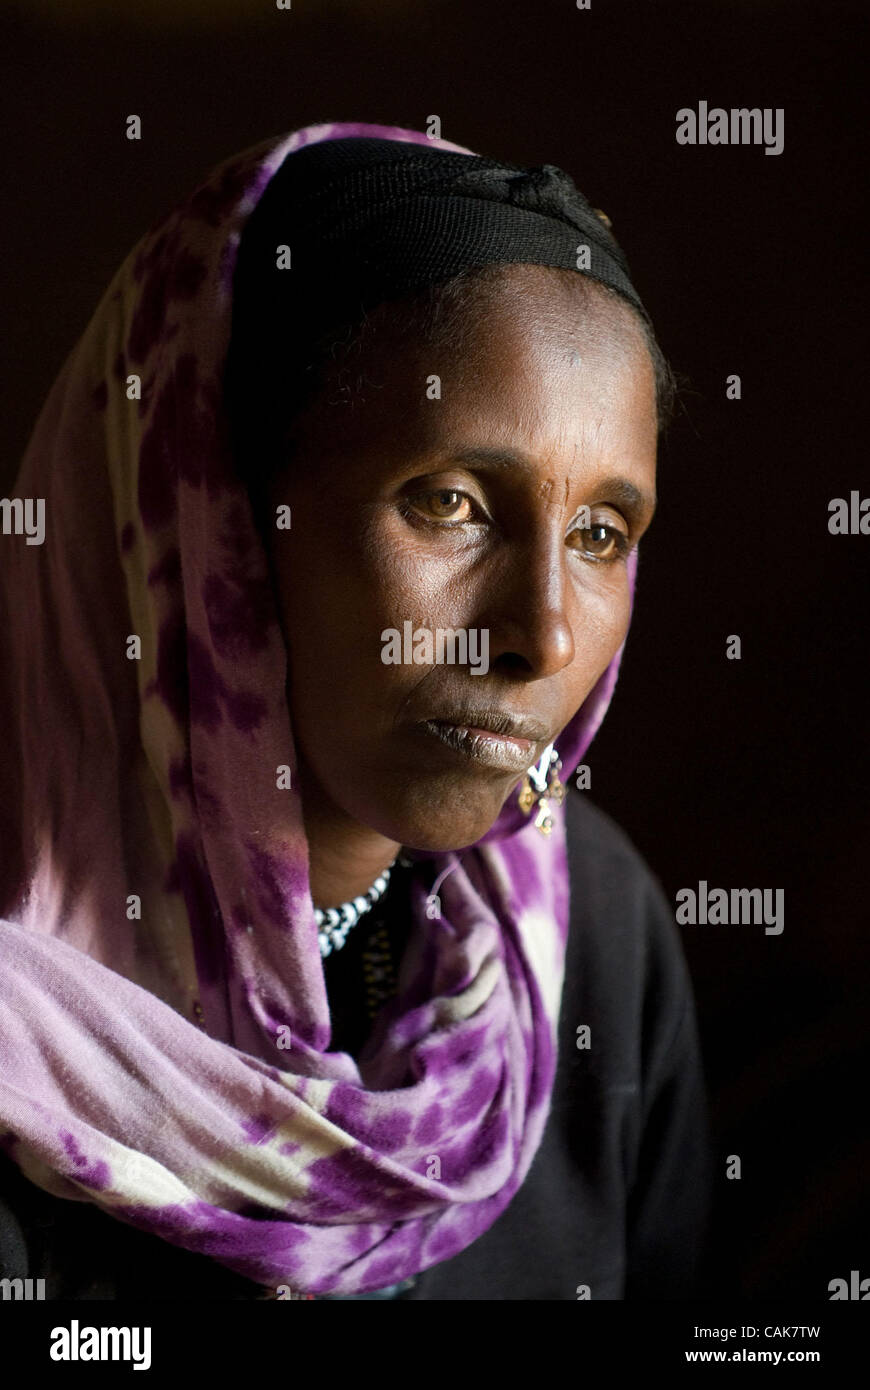 24. September 2007, unterstützt durch eine internationale Hilfsorganisation, trifft sich mit anderen Gruppenmitgliedern in ihrem kleinen Haus im ländlichen Äthiopien Dira Dawa, Äthiopien - eine Frau, die zu einer lokalen landwirtschaftlichen Genossenschaft gehört. (Credit: David Snyder/ZUMA Press) Stockfoto